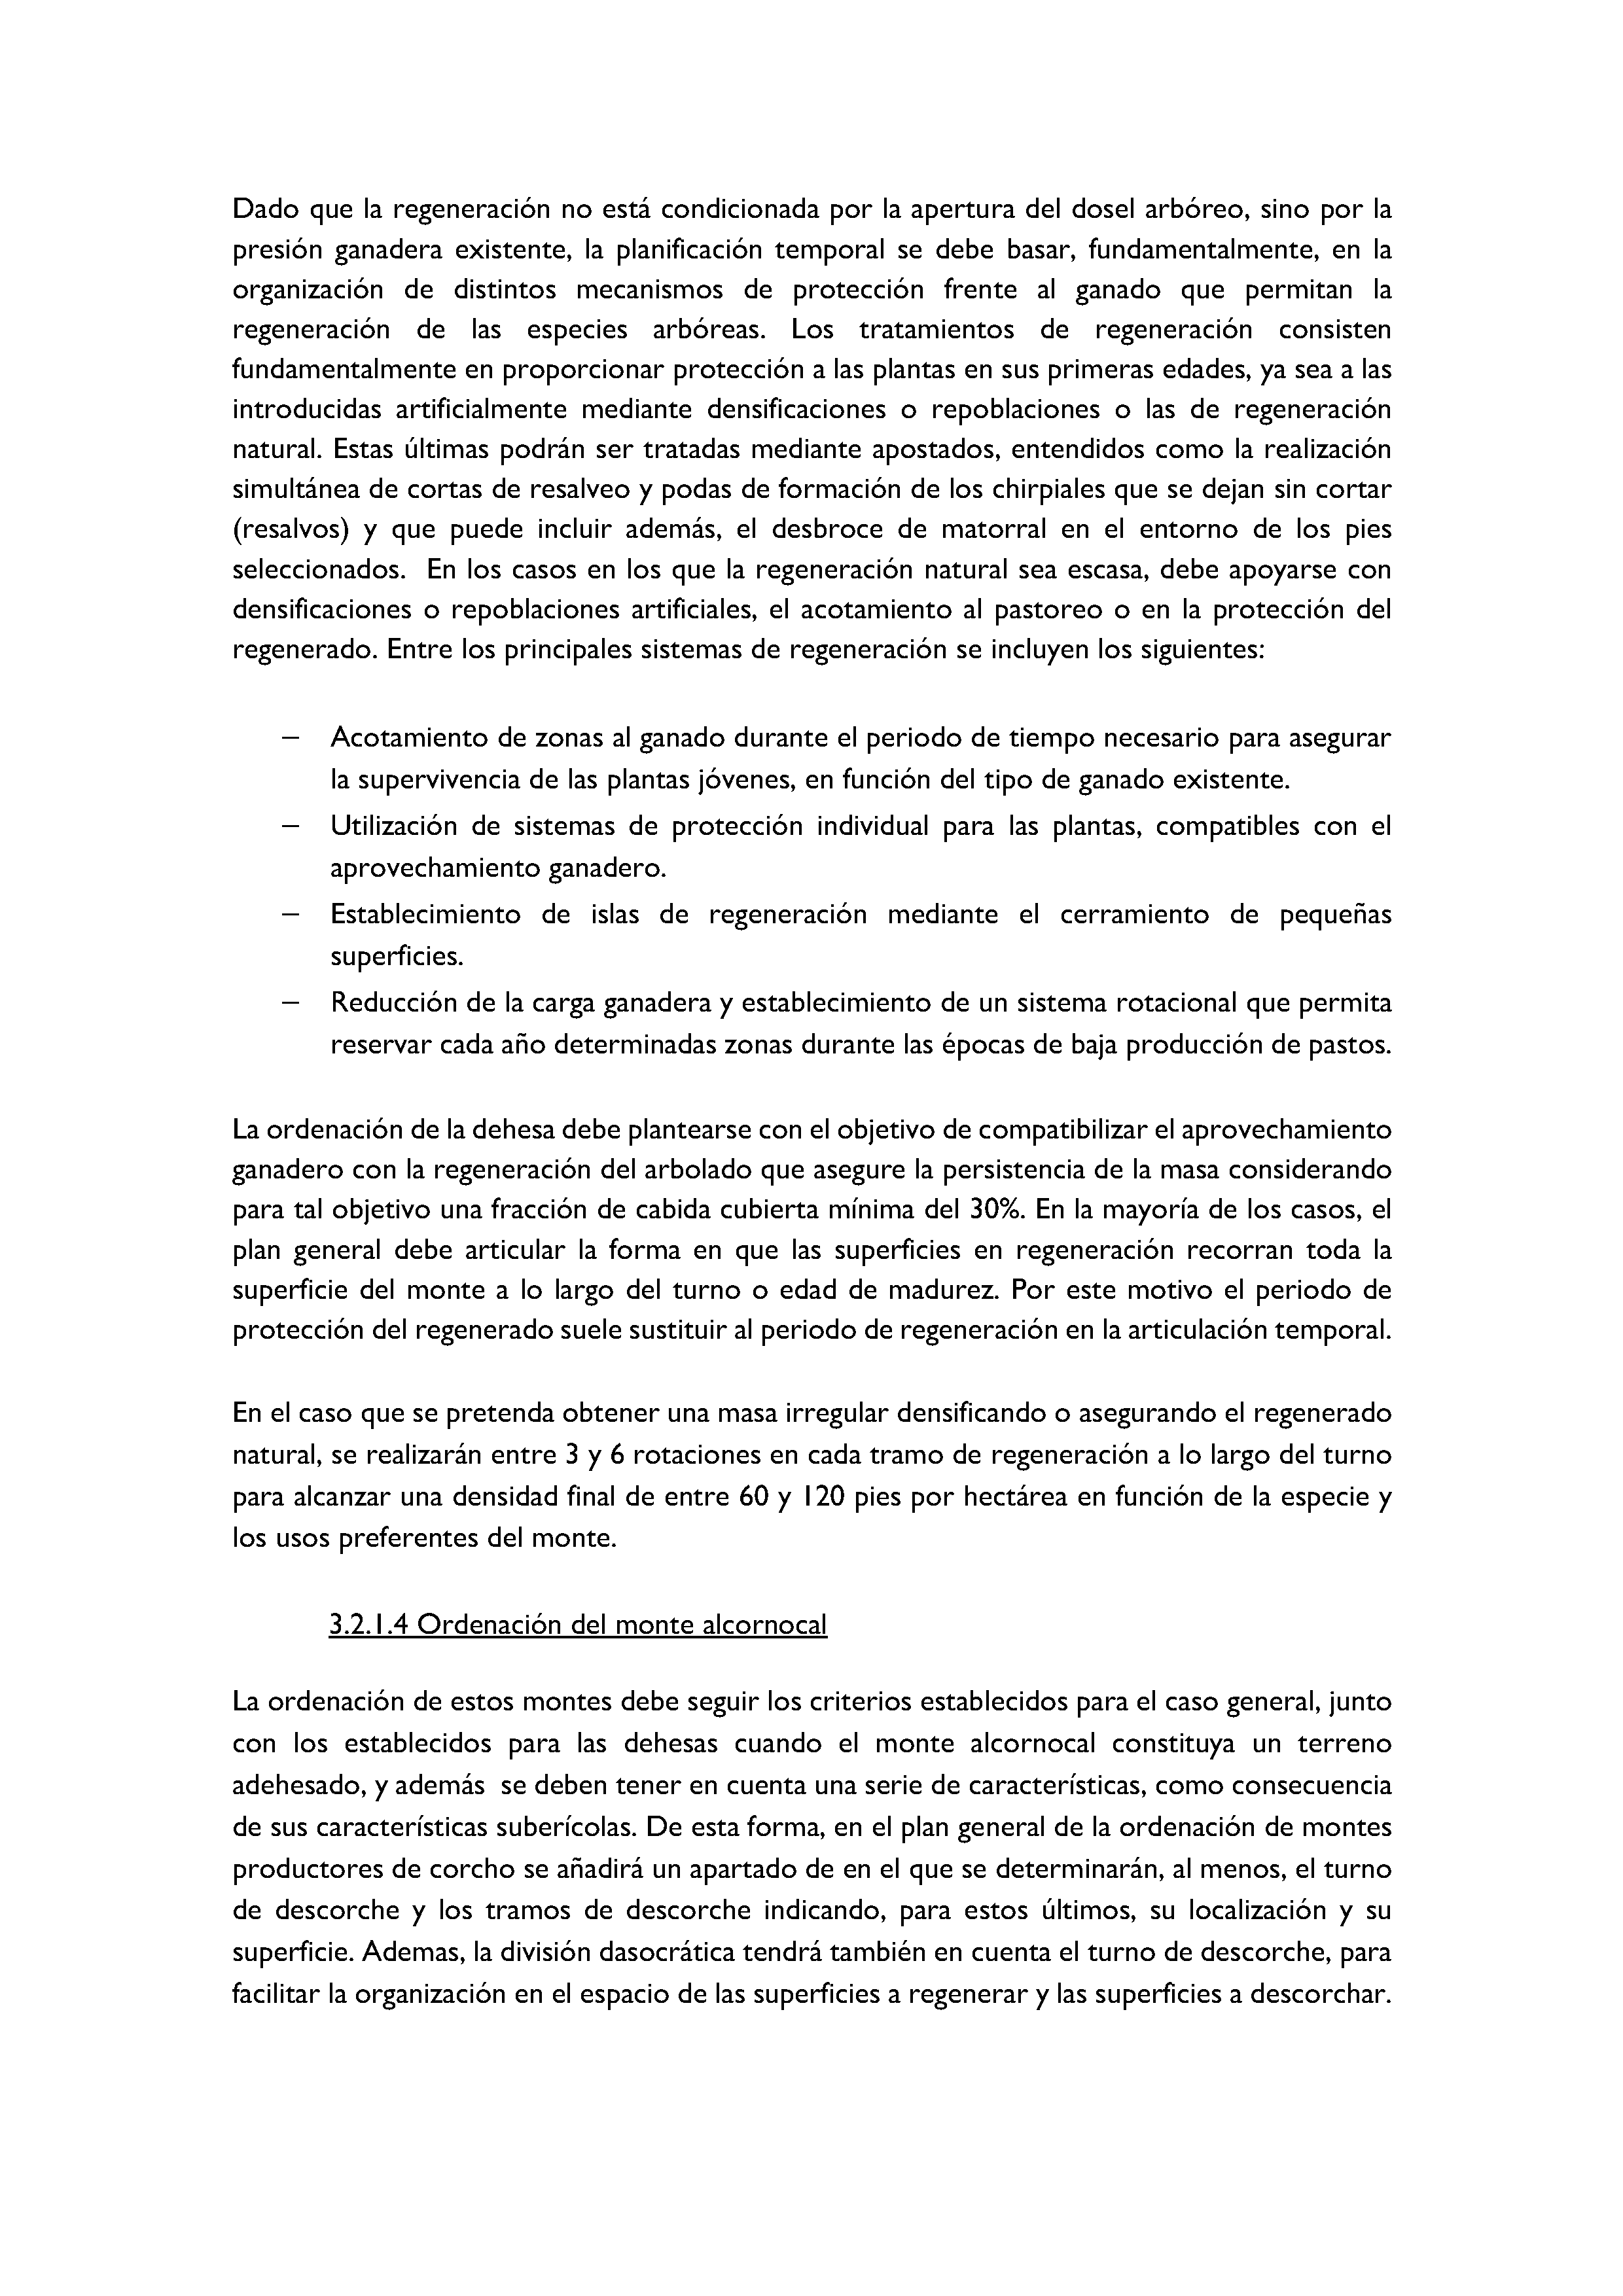 ANEXO - INSTRUCCIONES DE ORDENACIÓN DE LOS PROYECTOS DE ORDENACIÓN DE MONTES Pag 71